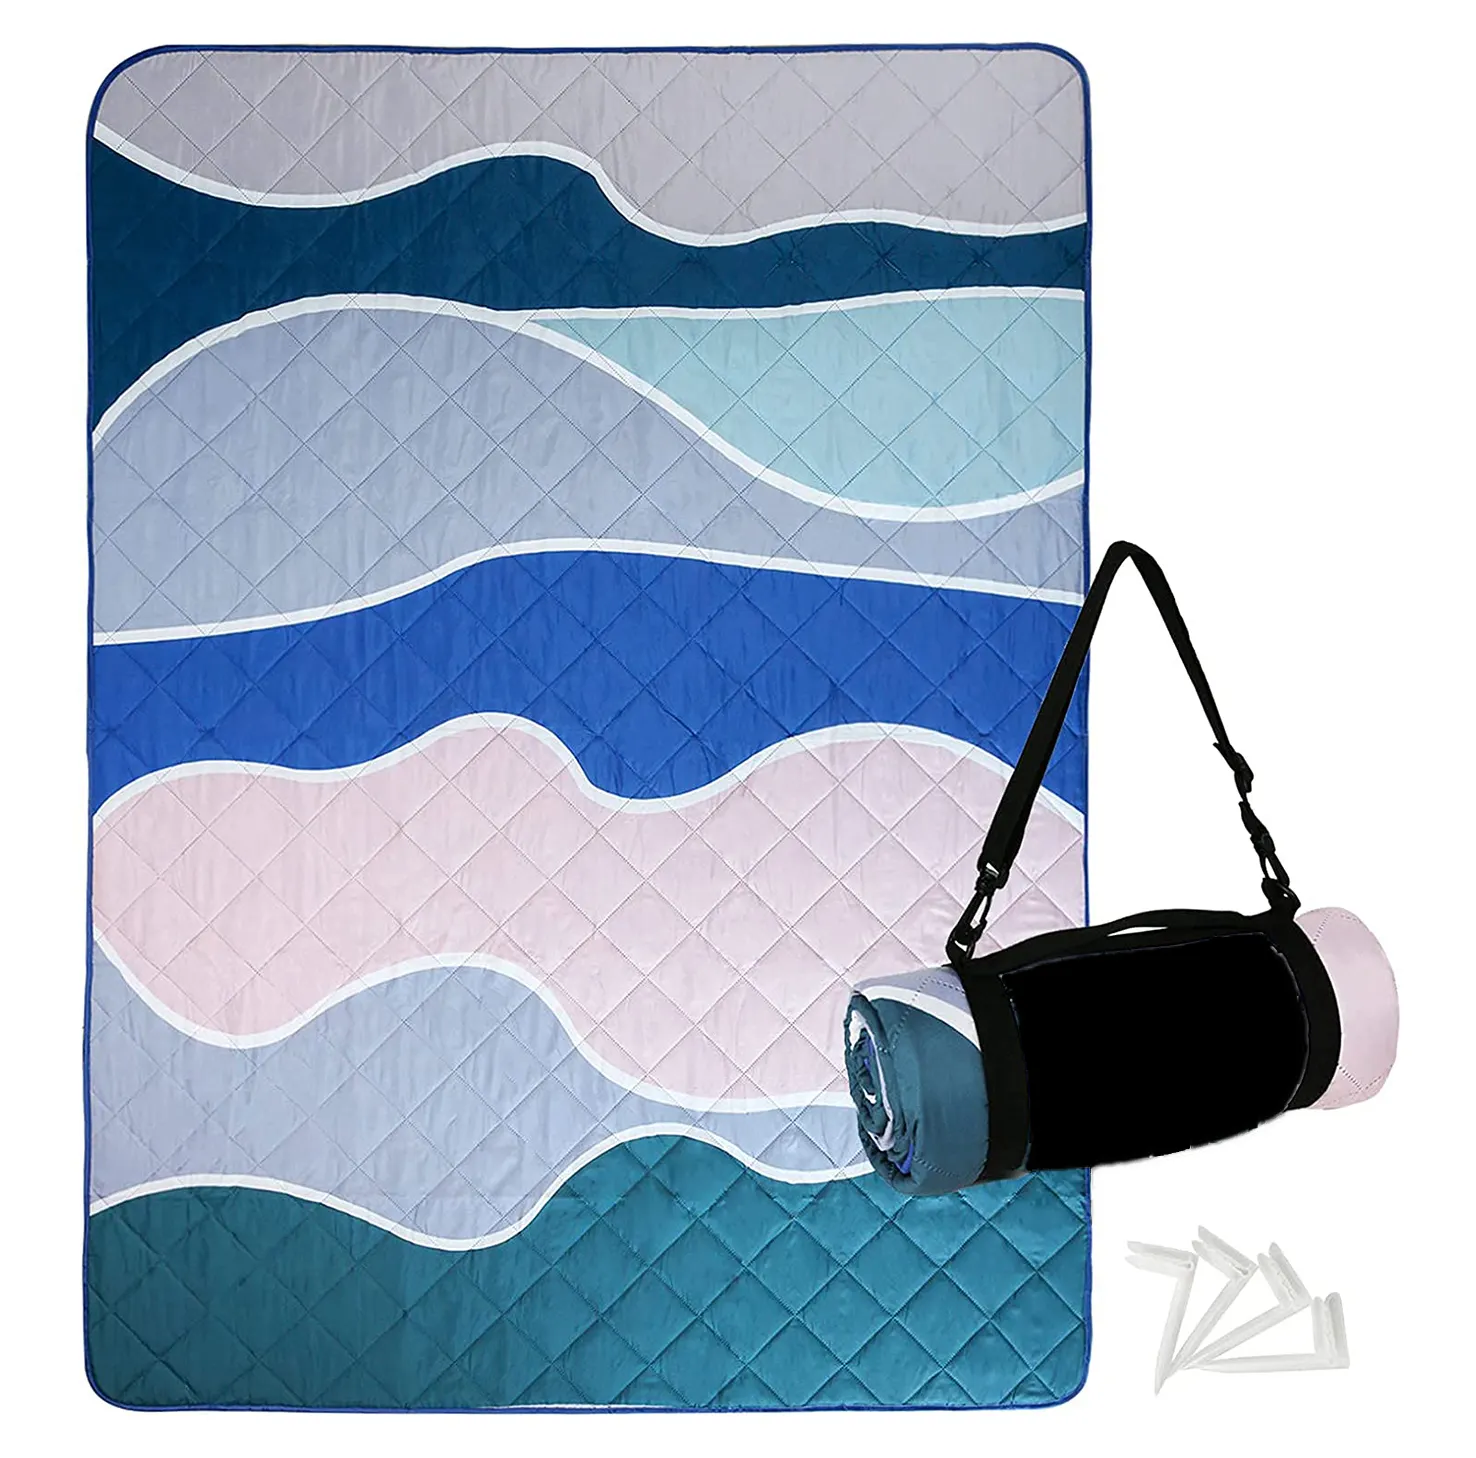 Kadar iyi Described Polyester dijital ekran baskı özel piknik örtüsü paketleri paketleri su plaj battaniyesi